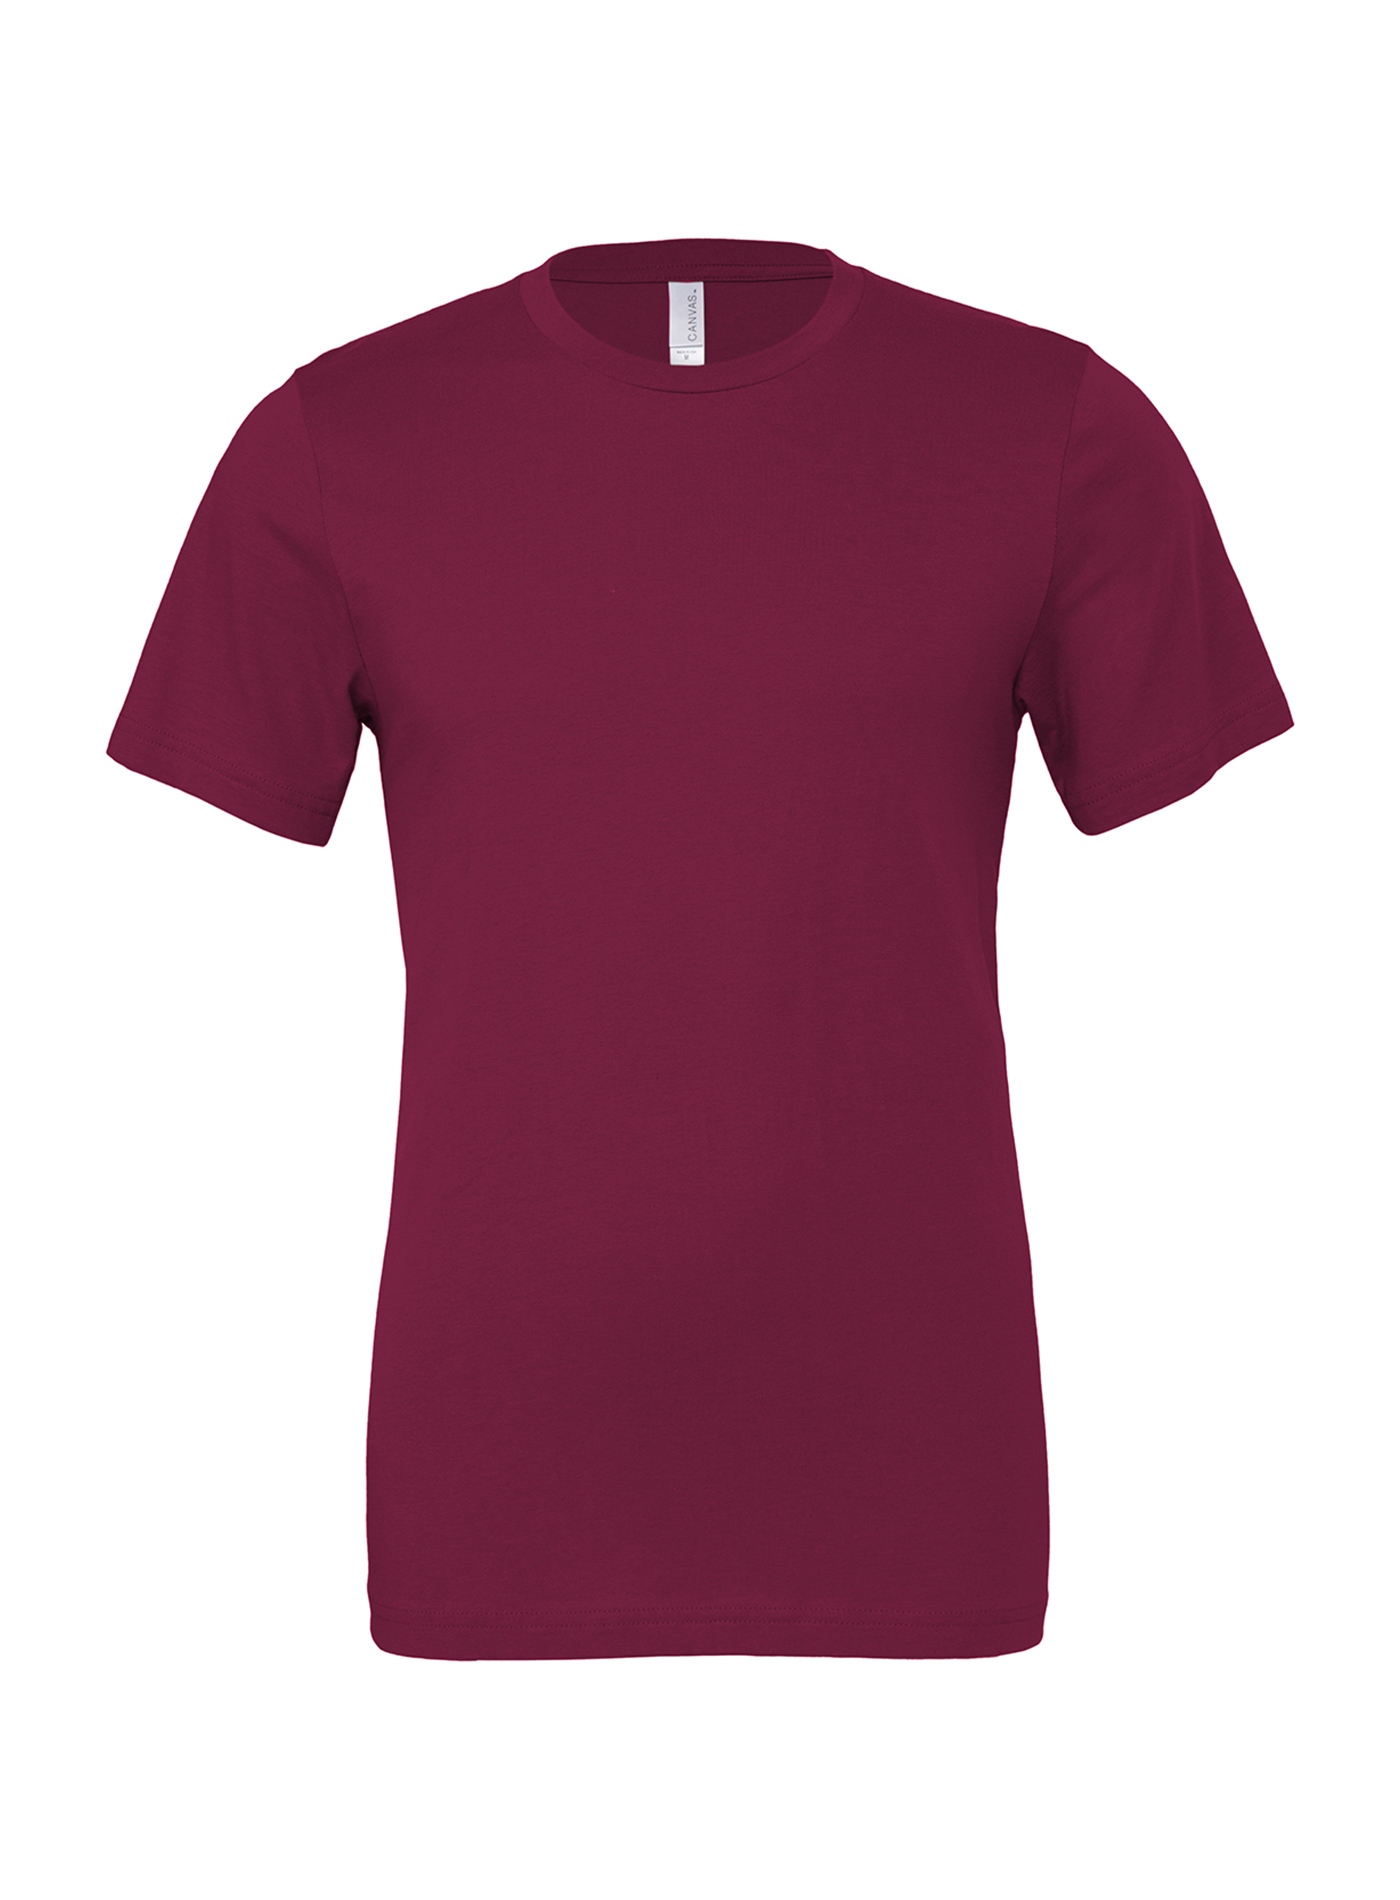 Unisex tričko Bella + Canvas Jersey - Červenofialová M